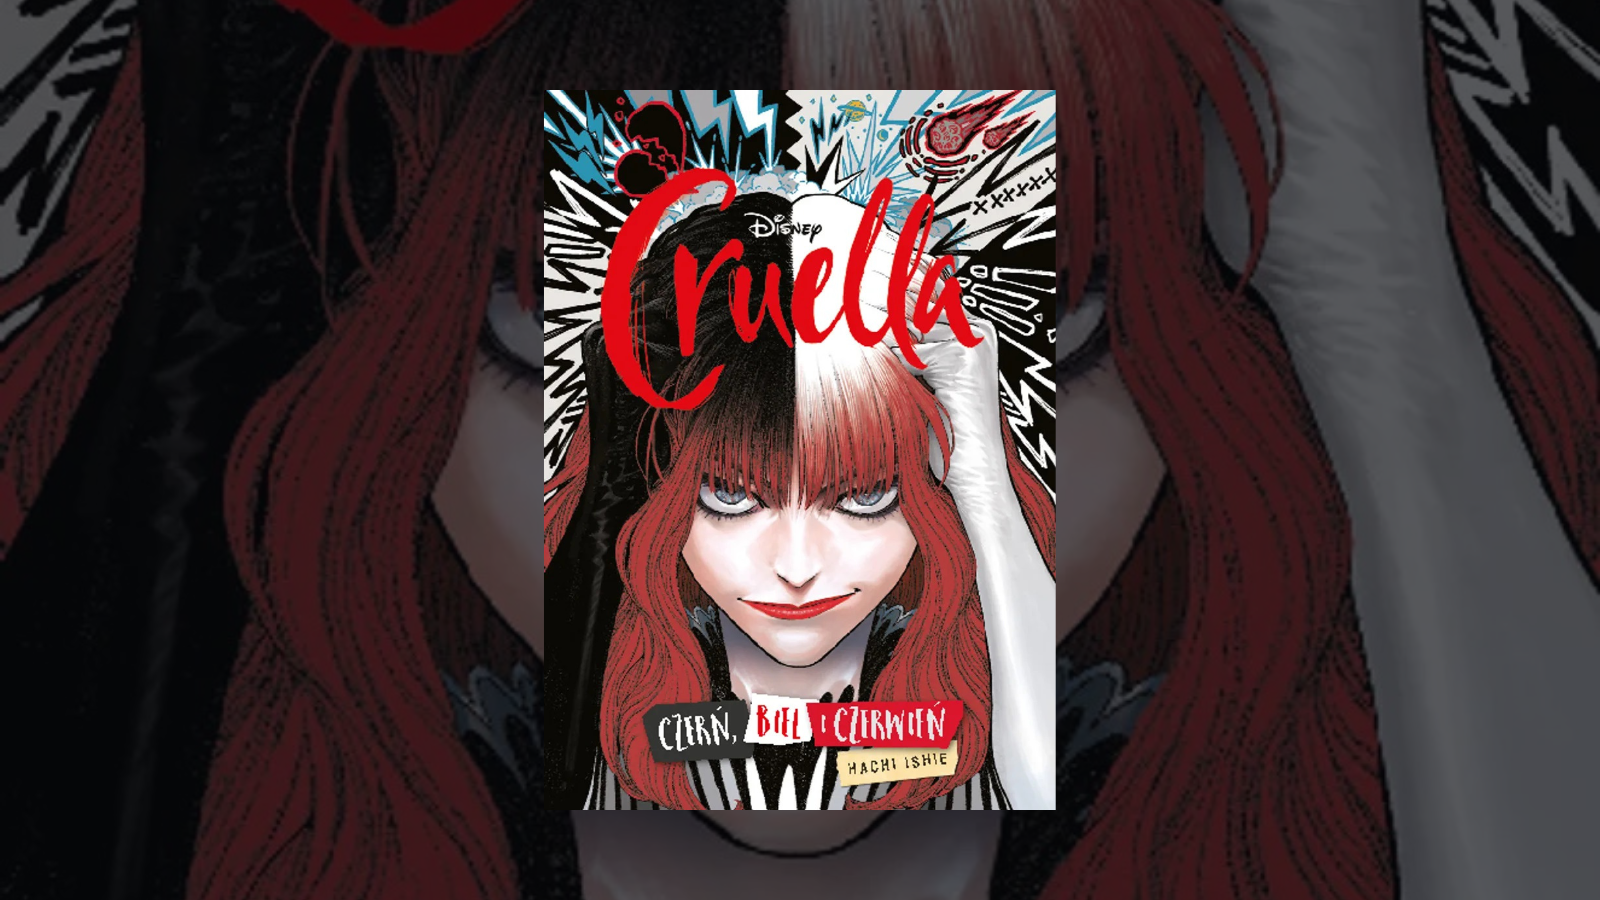 Cruella. Czerń, biel i czerwień – recenzja komiksu – Gdzie jest Cruella?